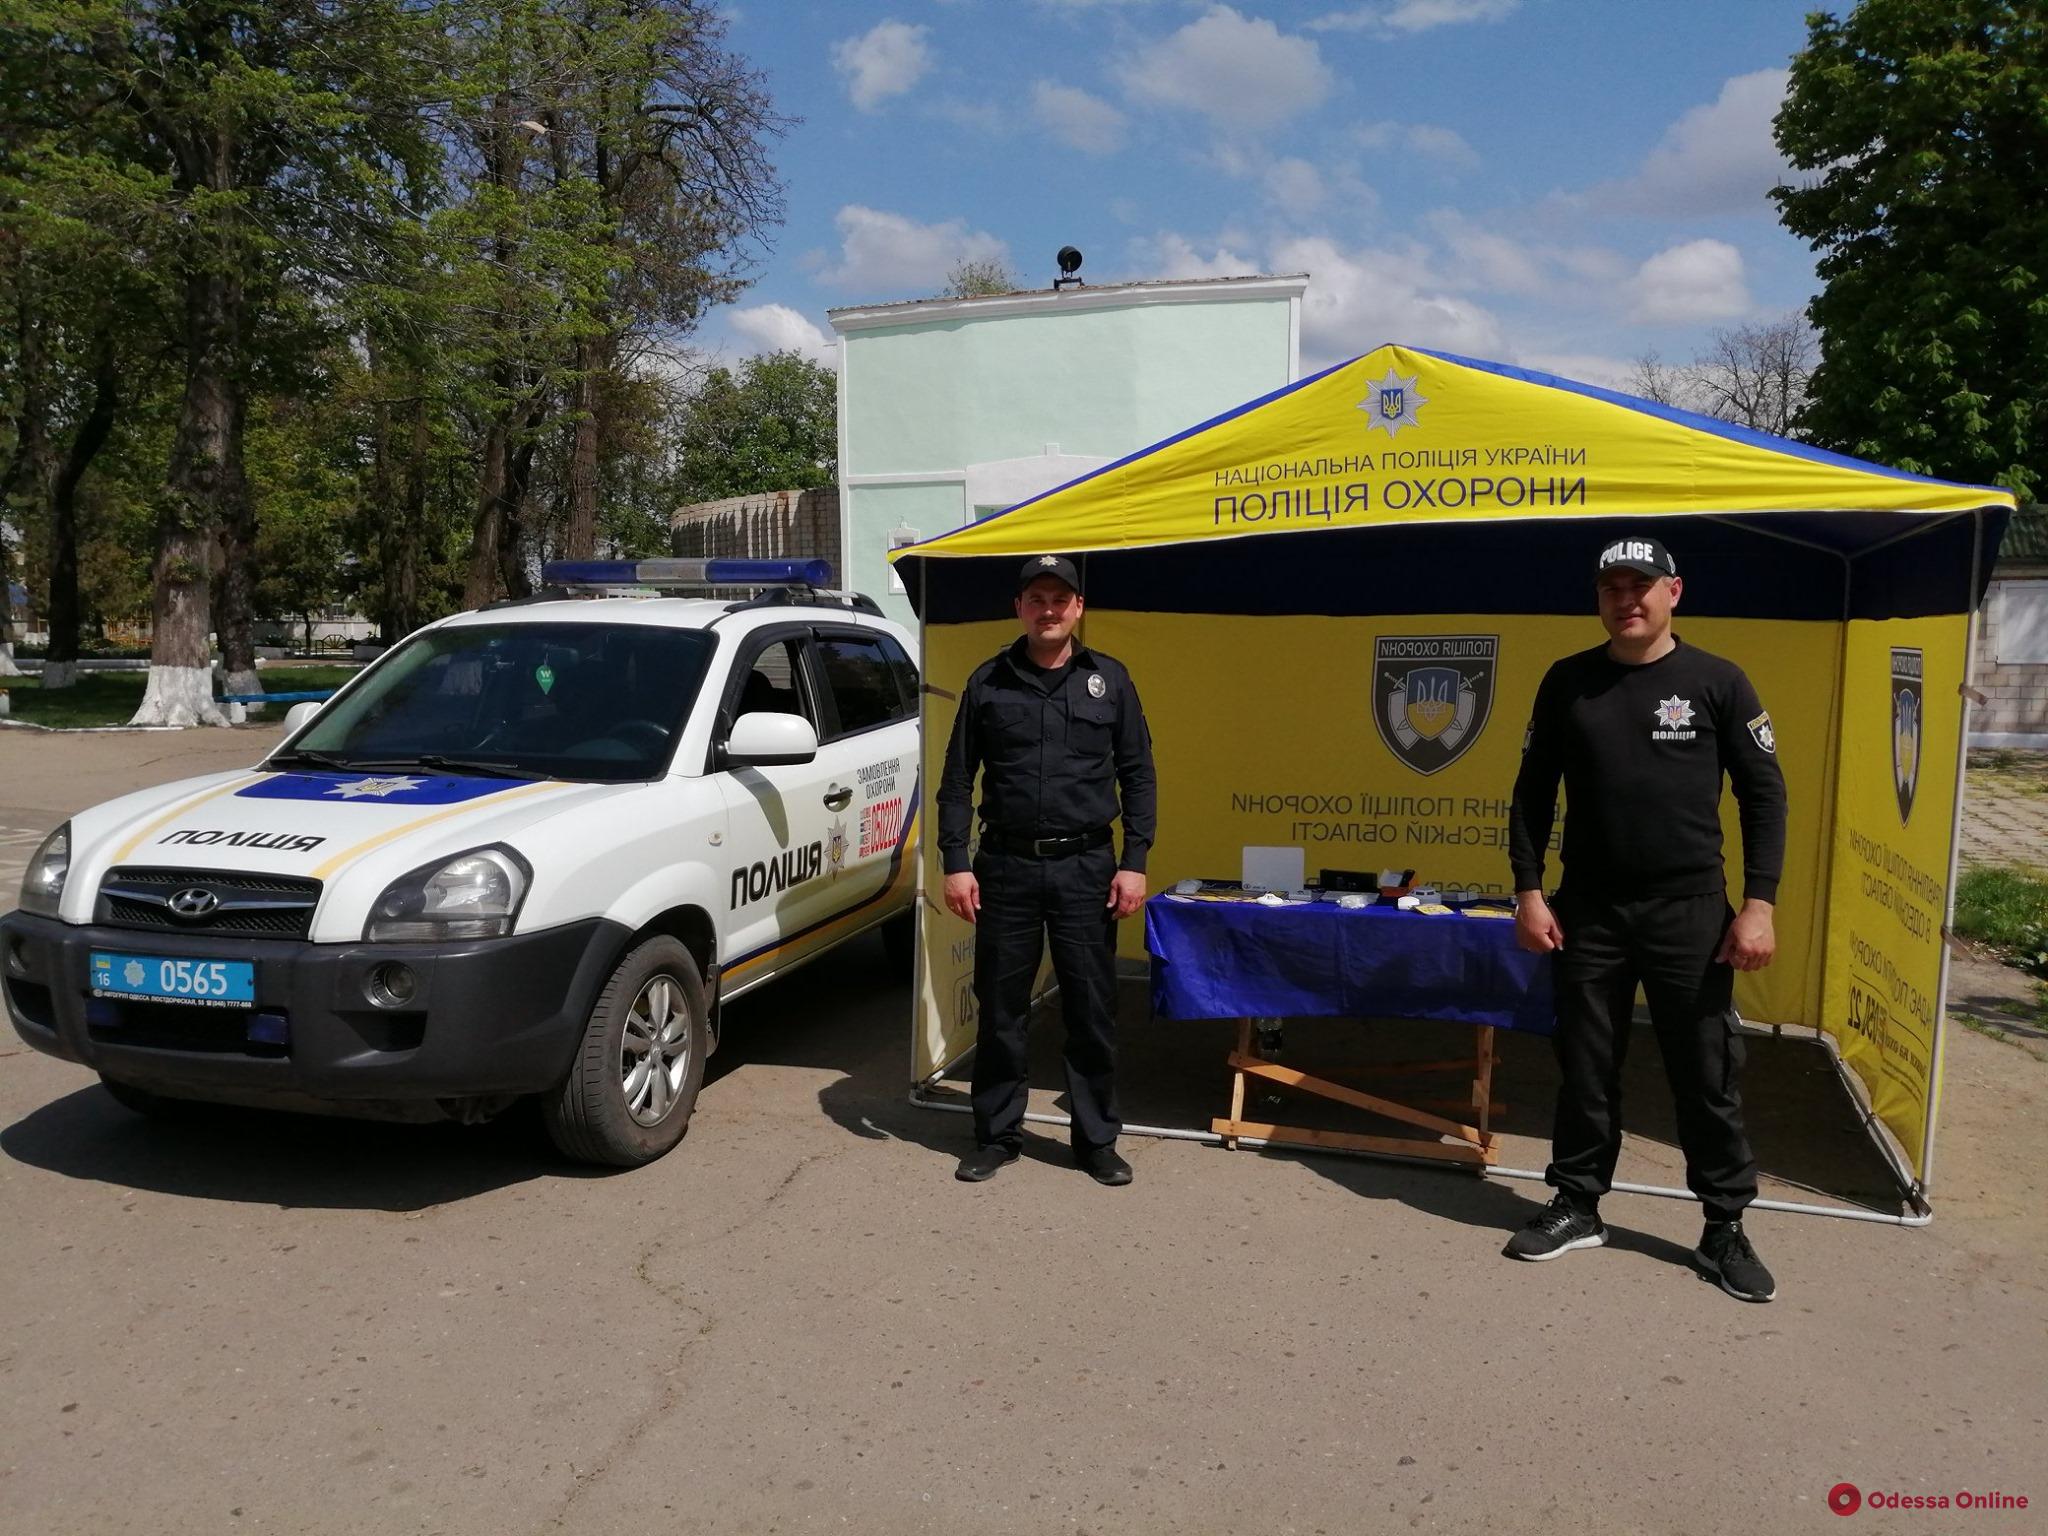 В Одессе появились рекламно-информационные палатки полиции охраны